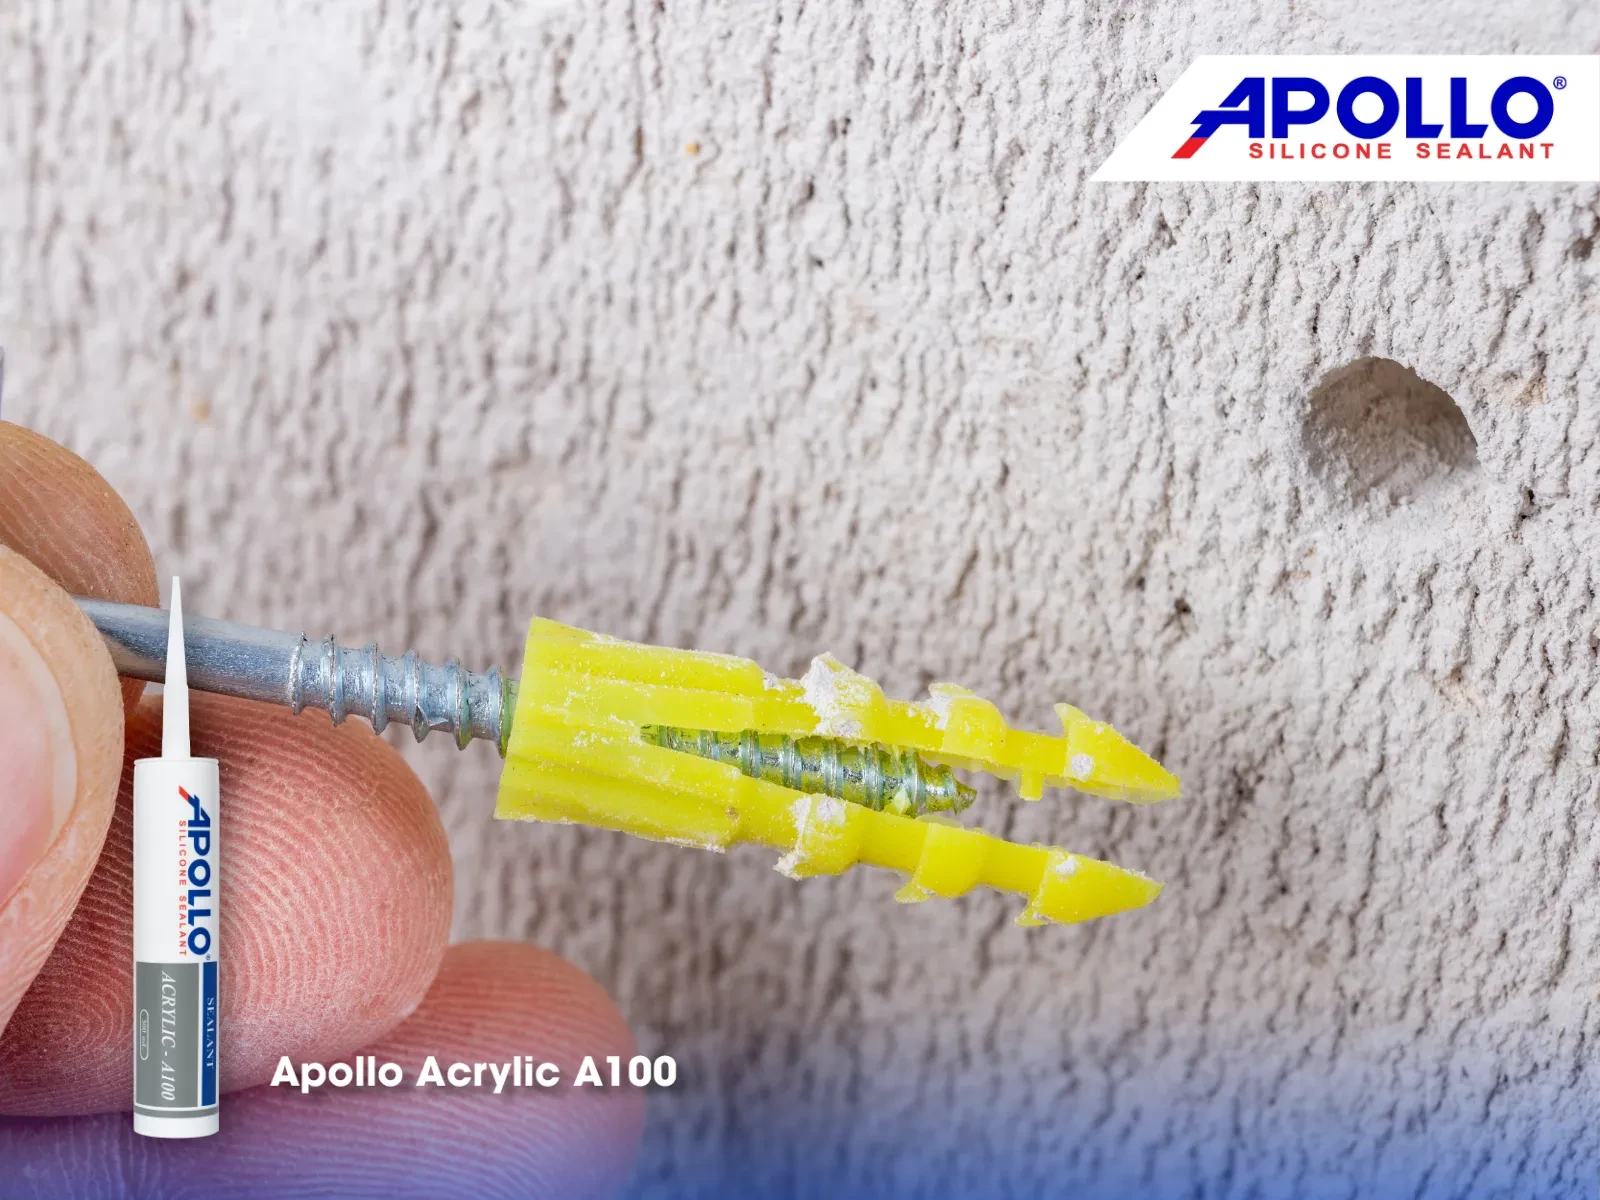 Bạn cần phải lấy tắc kê trong lỗ đinh cũ trước khi trám kín tường để chất keo Apollo Acrylic A100 phát huy tốt nhất khả năng bám dính